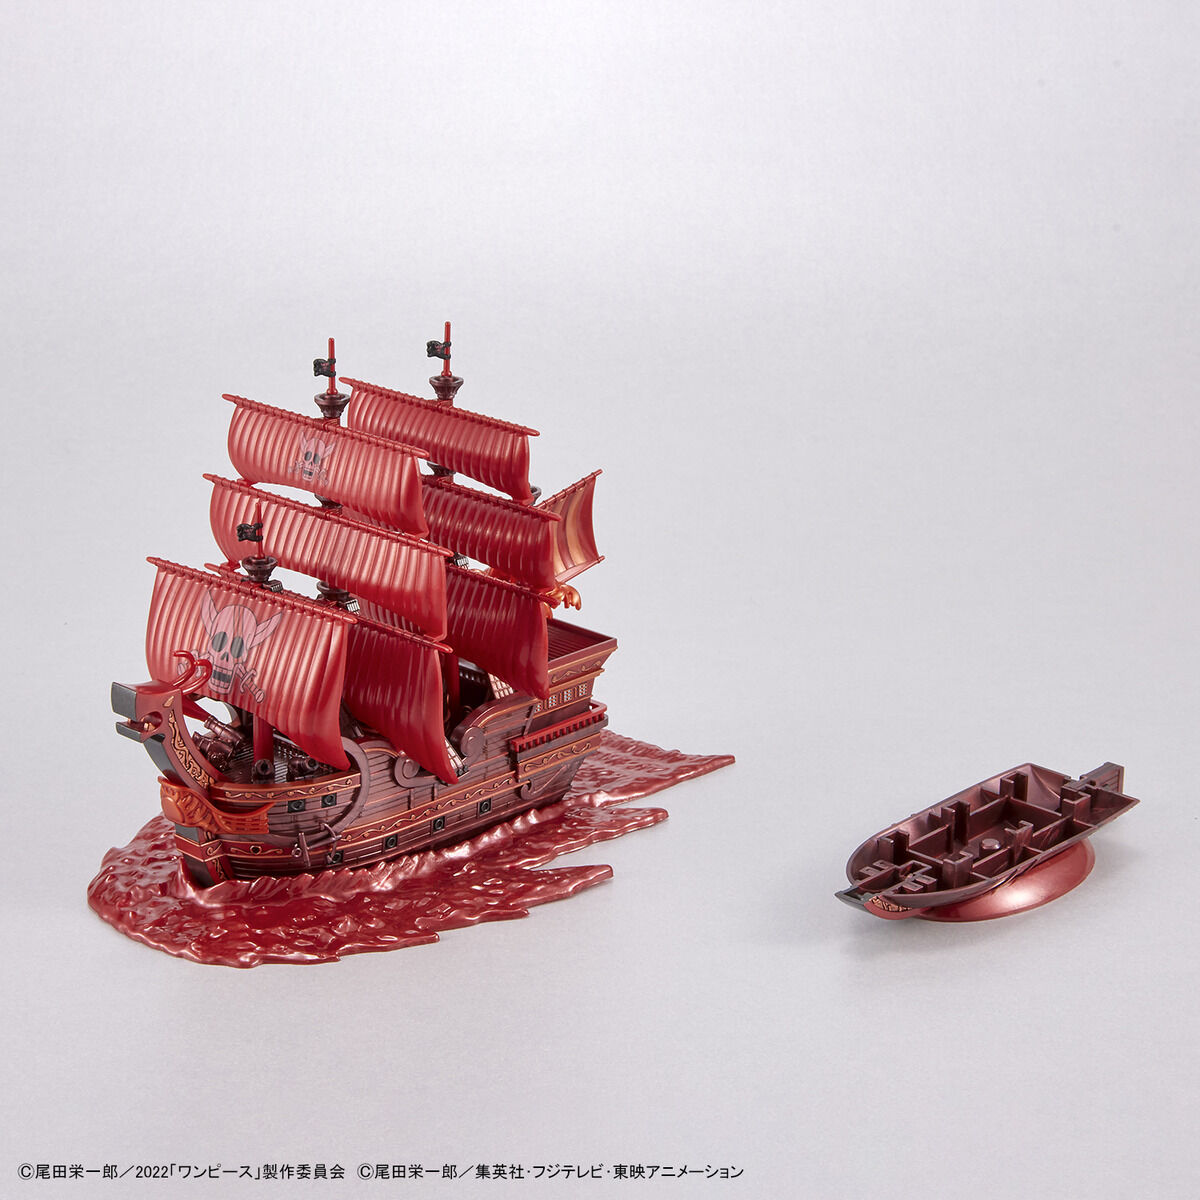 ワンピース偉大なる船コレクション レッド・フォース号「FILM RED」公開記念カラーVer. 07